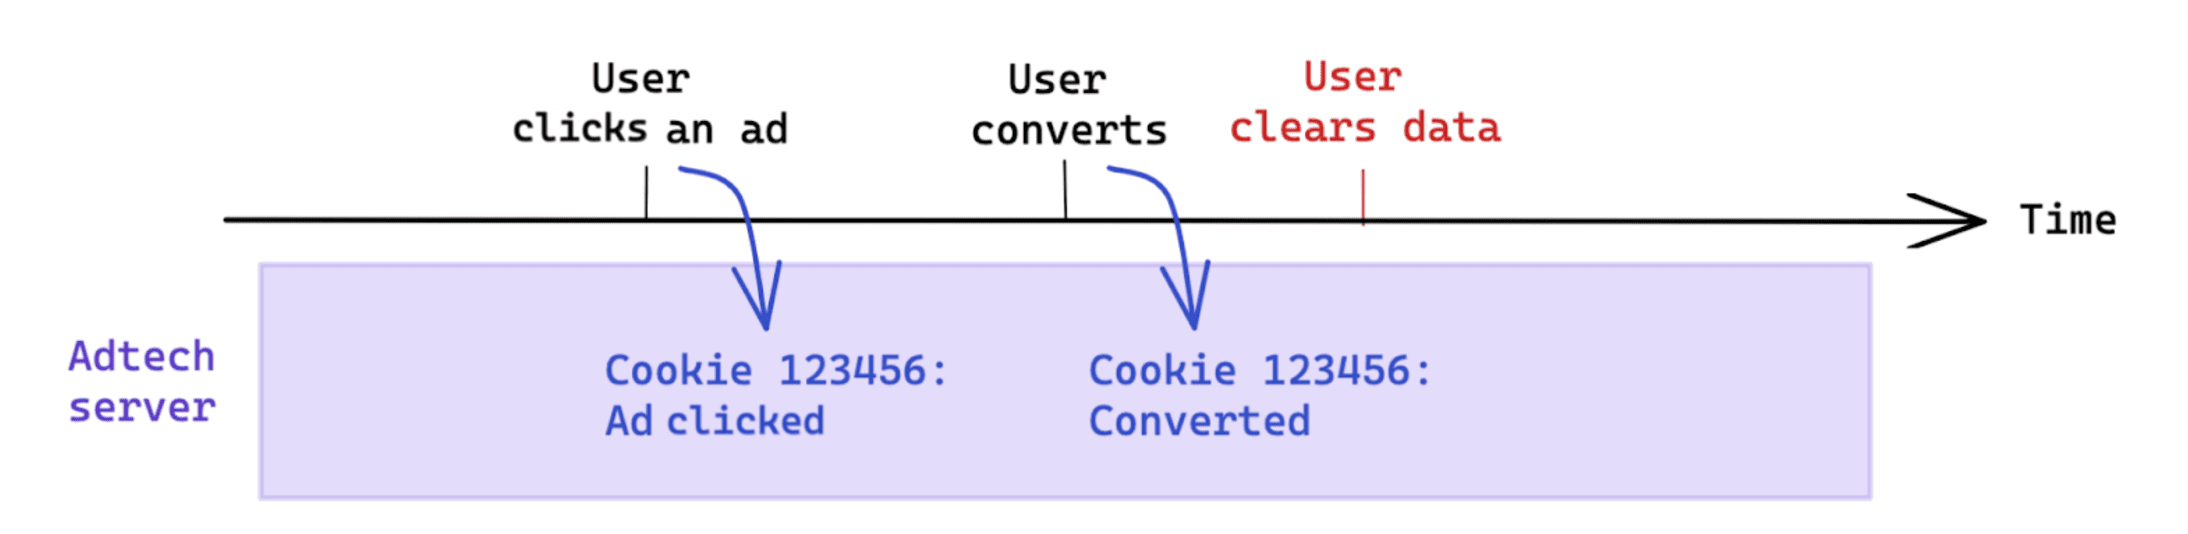 La cancellazione dei dati avviata dall&#39;utente dopo una conversione non influisce sulla misurazione basata sui cookie.